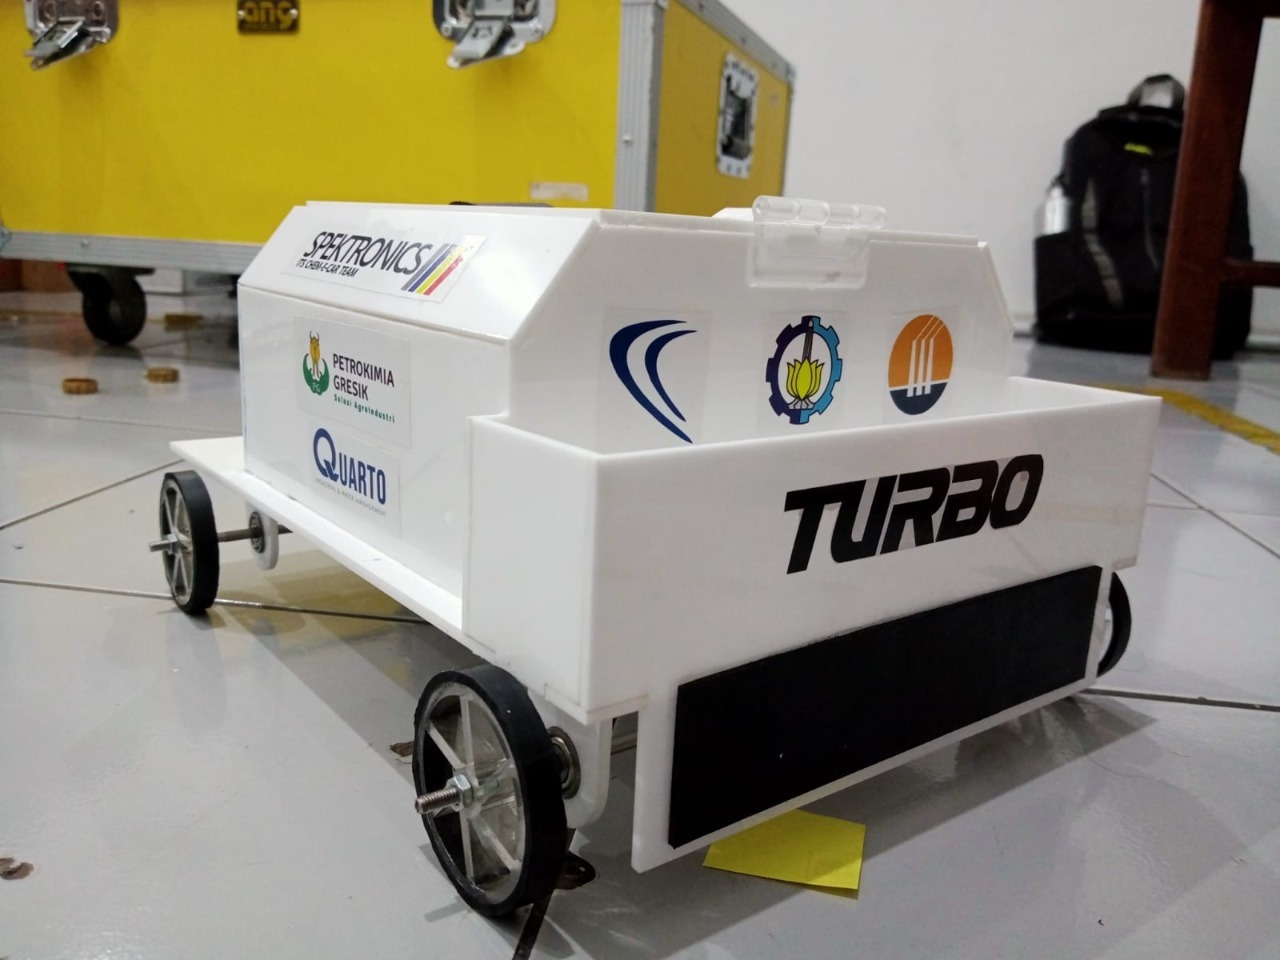 Tampilan Chem E-Car milik tim Spektronics Turbo ITS dengan pemanfaatan perbedaan suhu untuk menggerakkan mobil